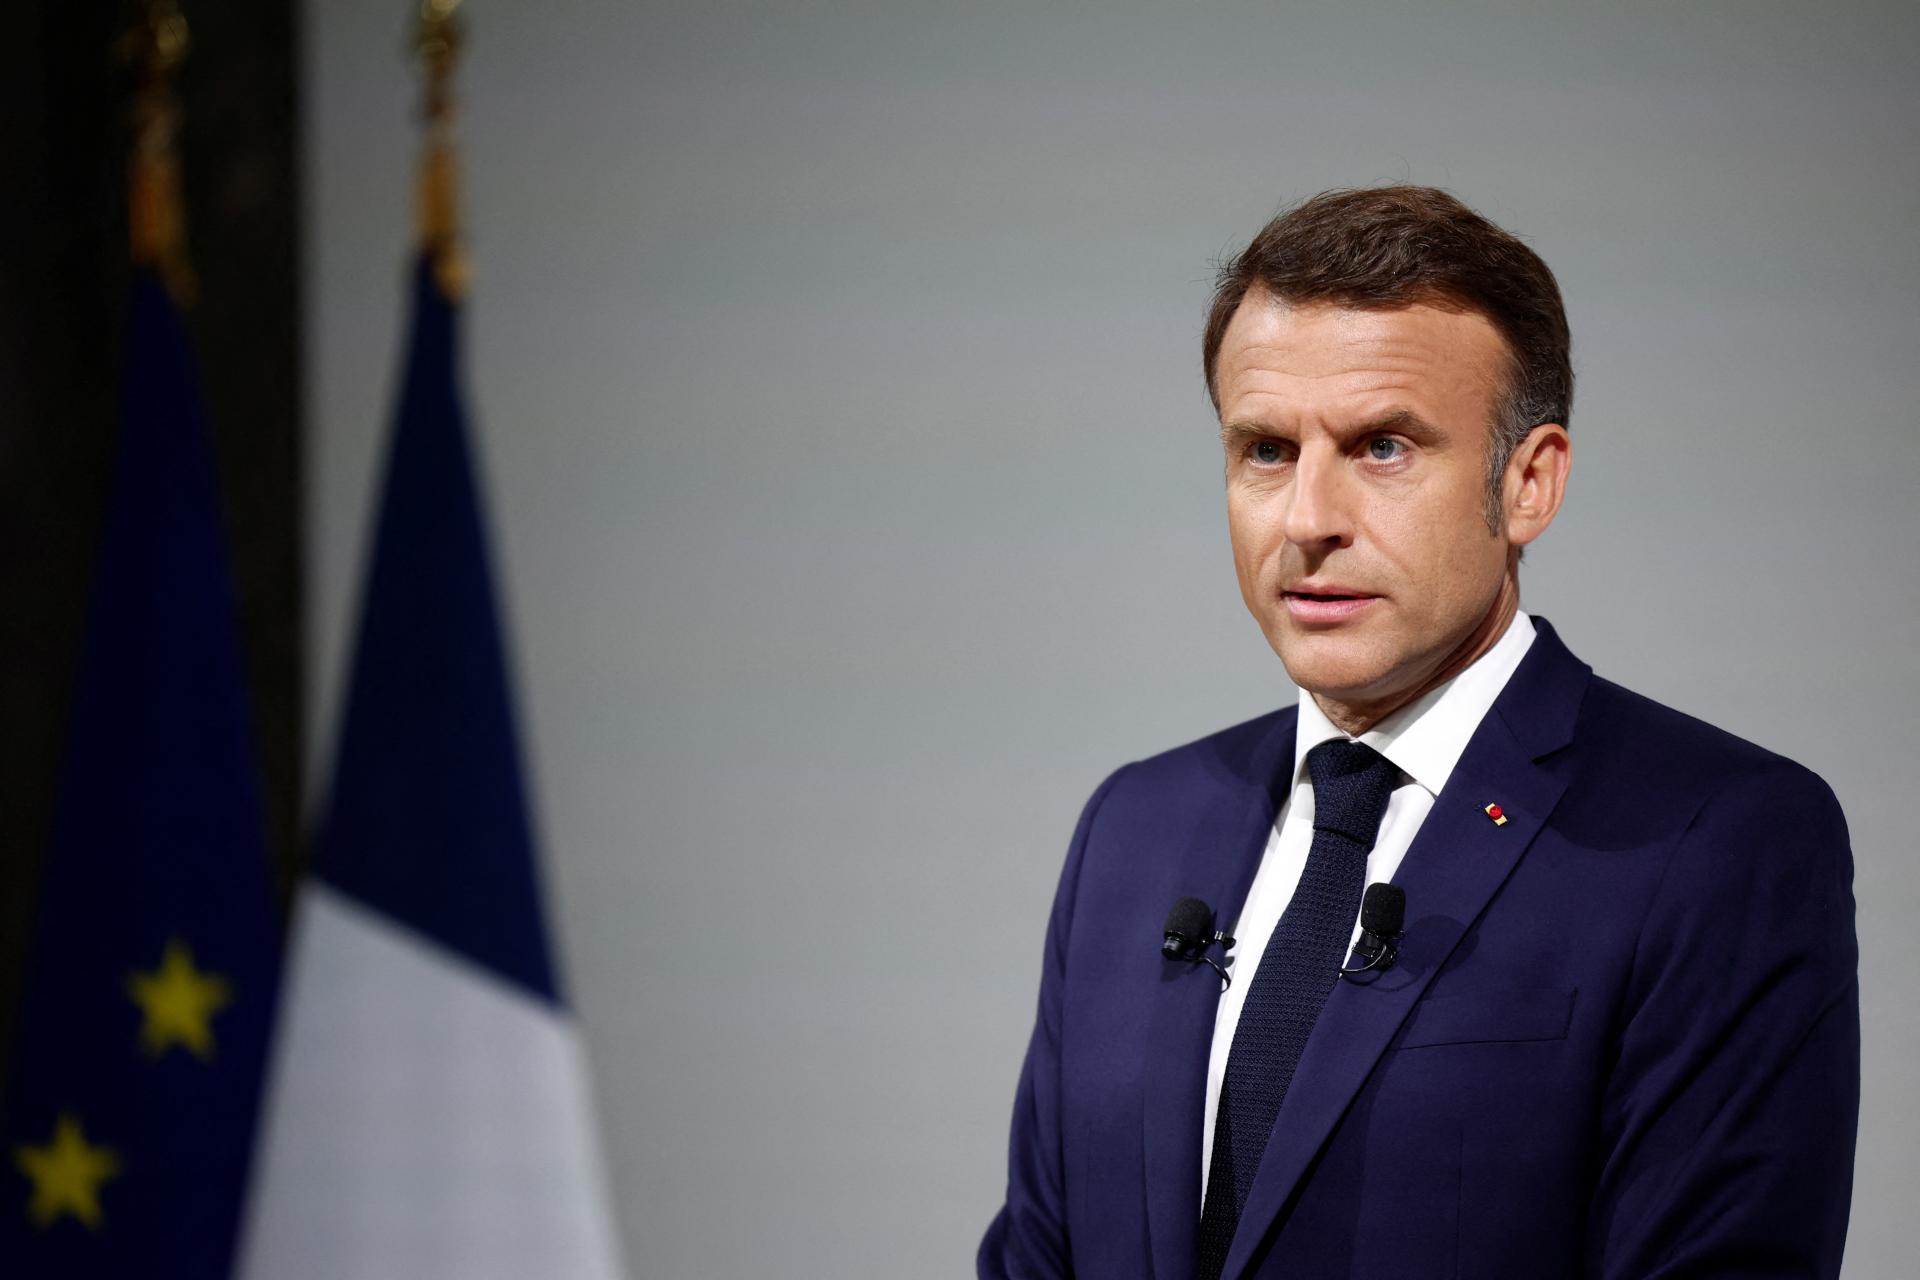 Jedine nové voľby vyjasnia smer Francúzska, vyhlásil Macron. Vyzval politikov na spoluprácu proti extrémom